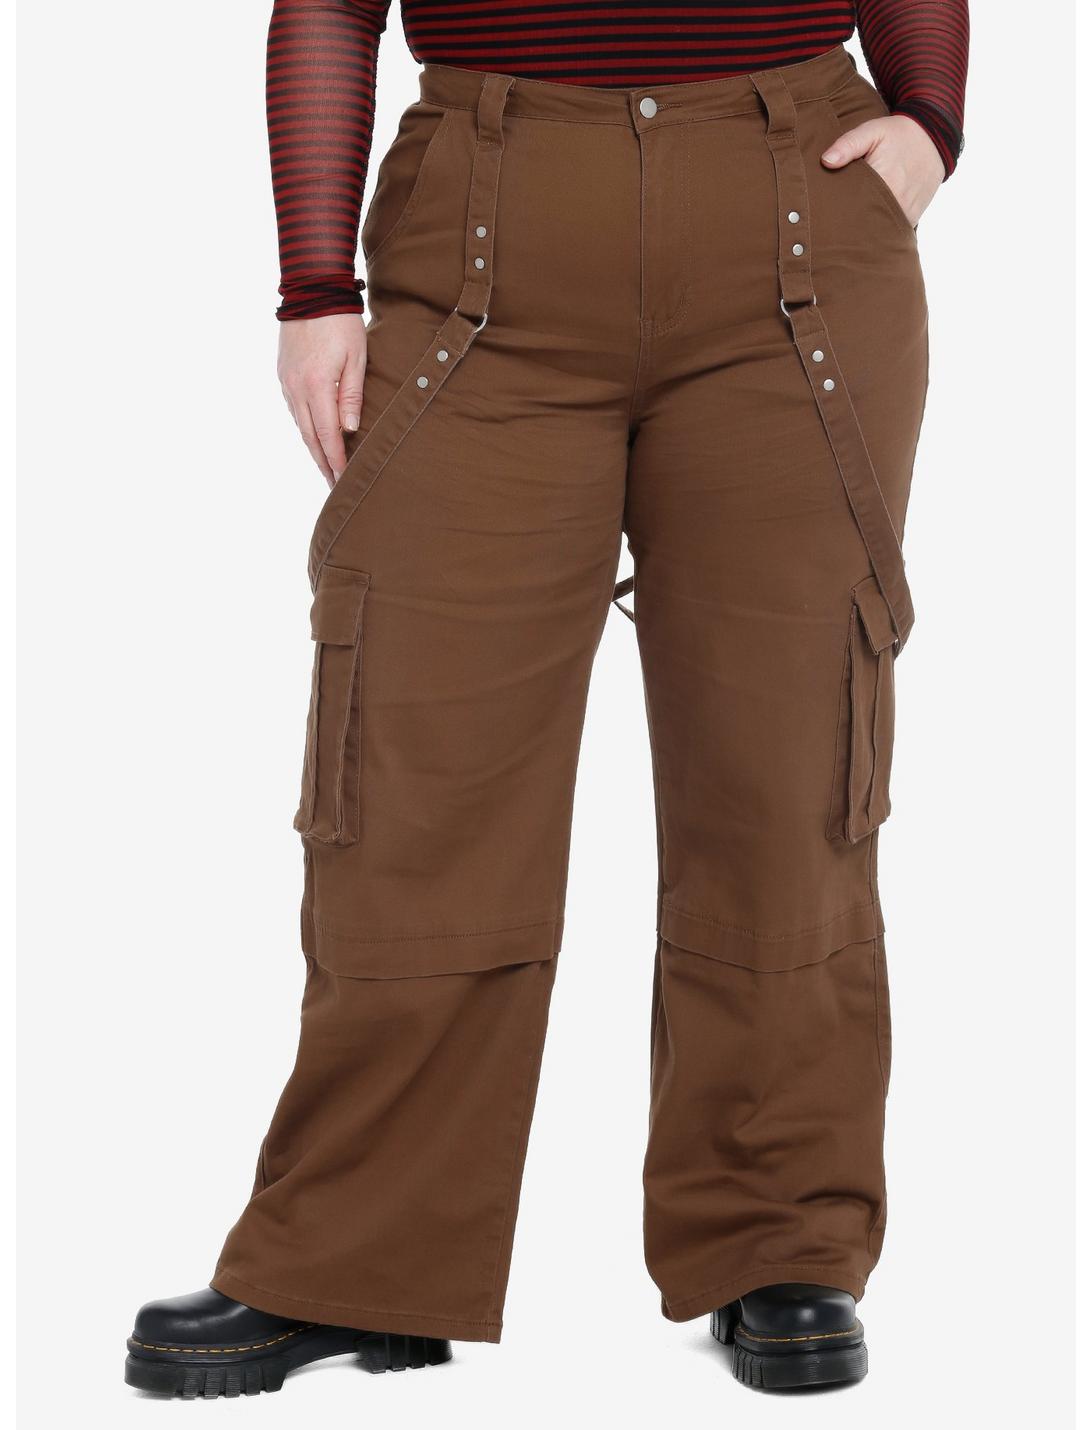 Social Collision Brown Wide Leg Suspender Pants Plus Size, BROWN, hi-res